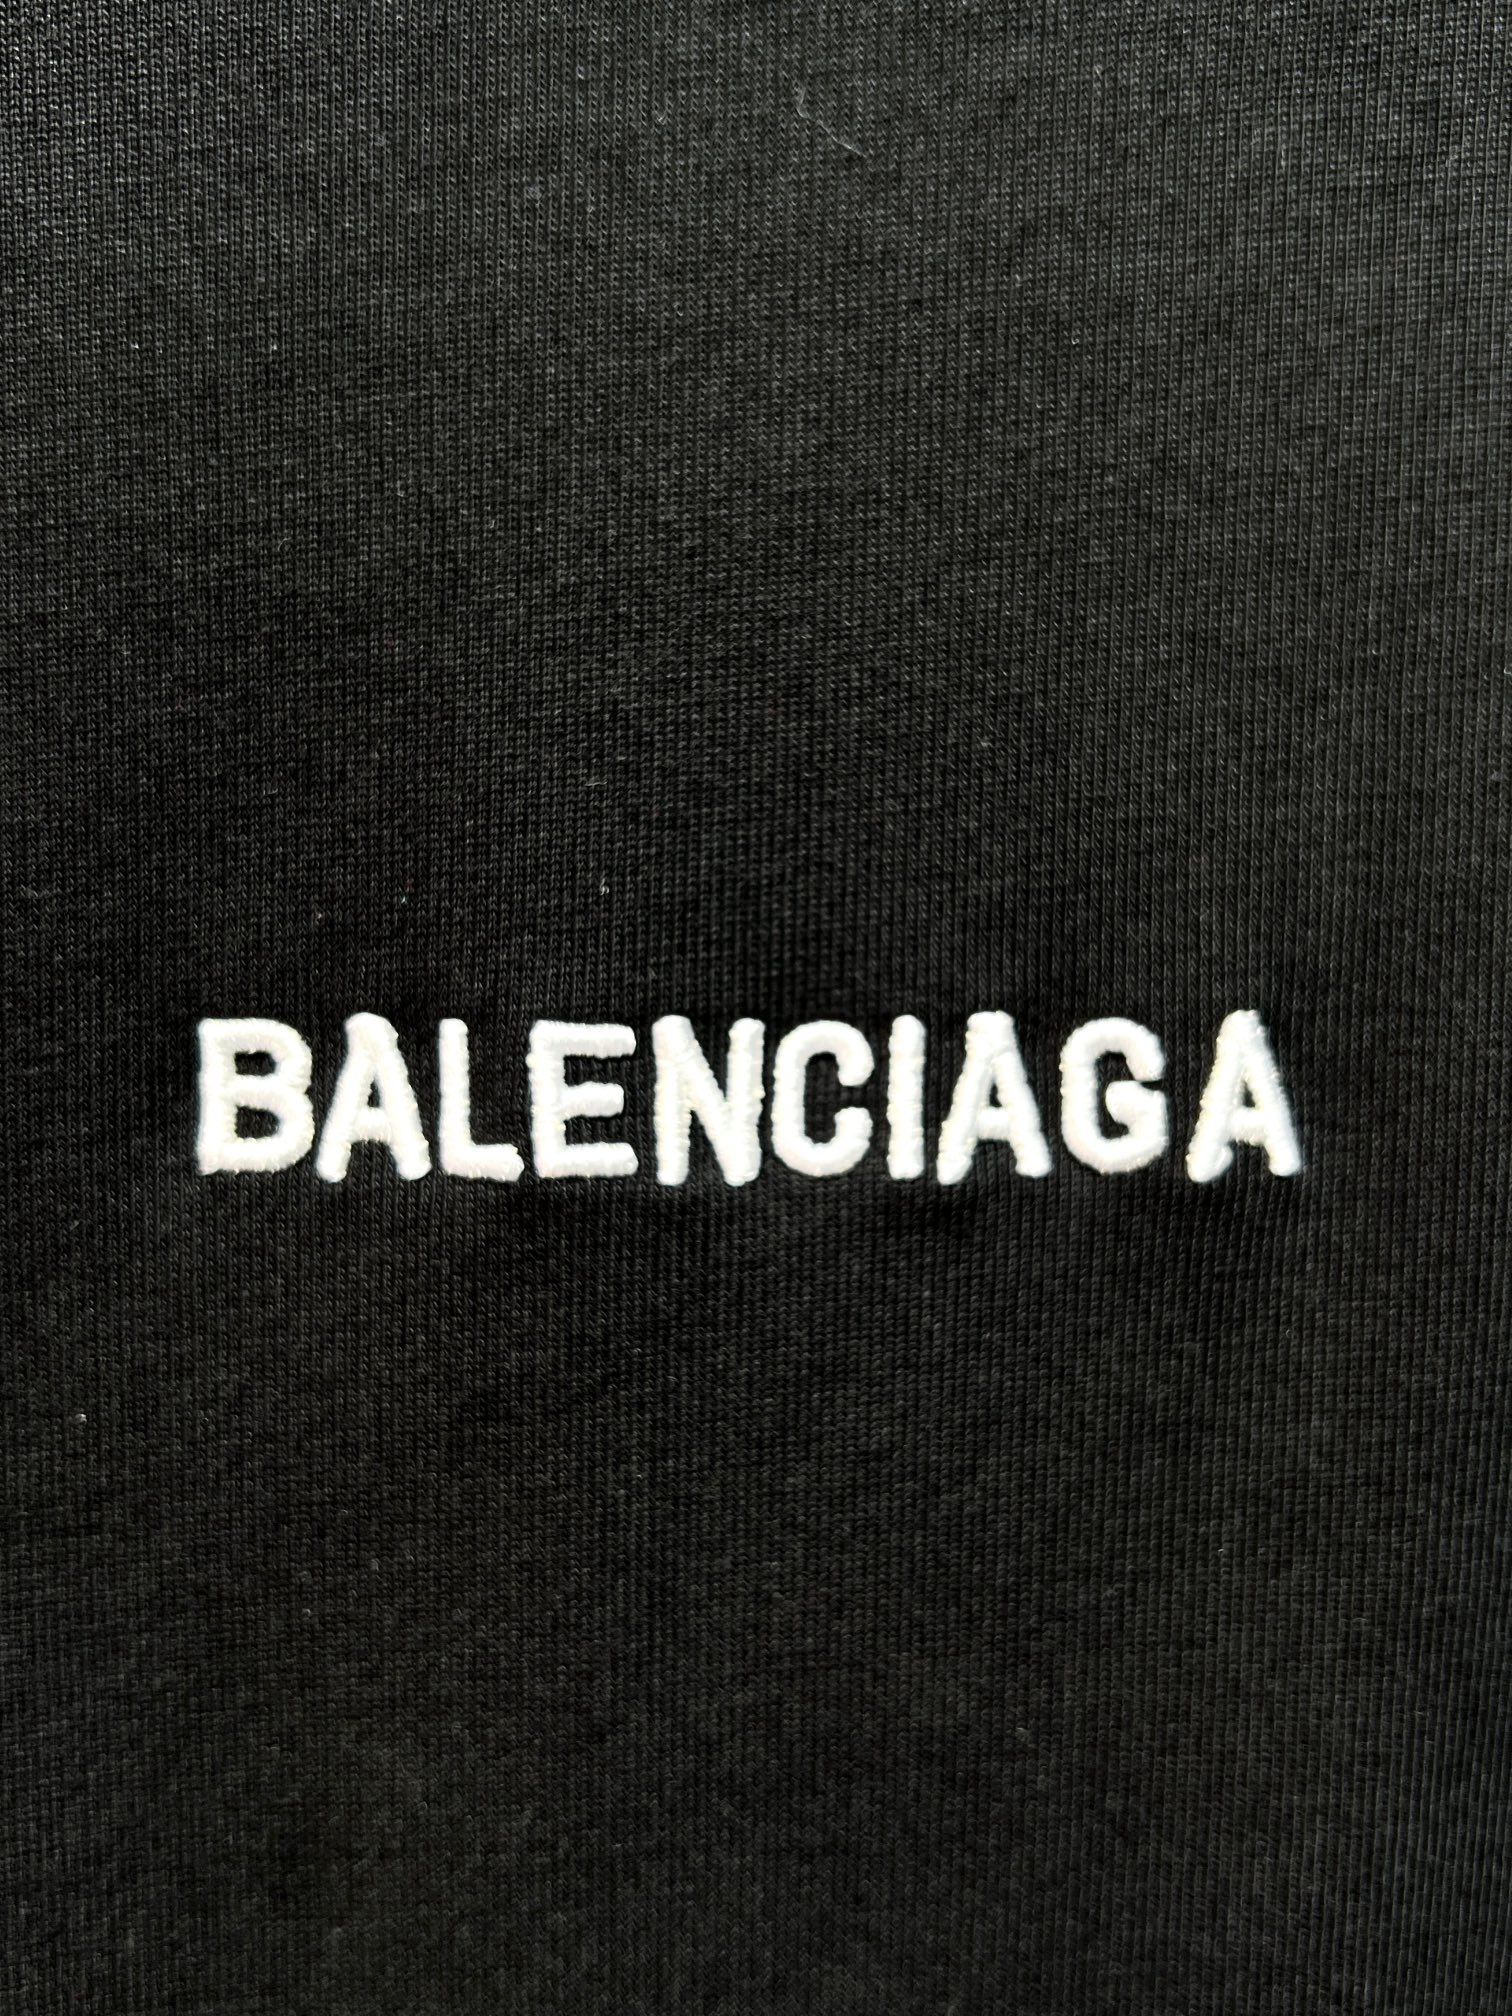 最新到着‼バレンシアガ 夏服コピー tシャツ偽物 ロゴプリント トップス 短袖 純綿 男女兼用 シンプル ブラック_4